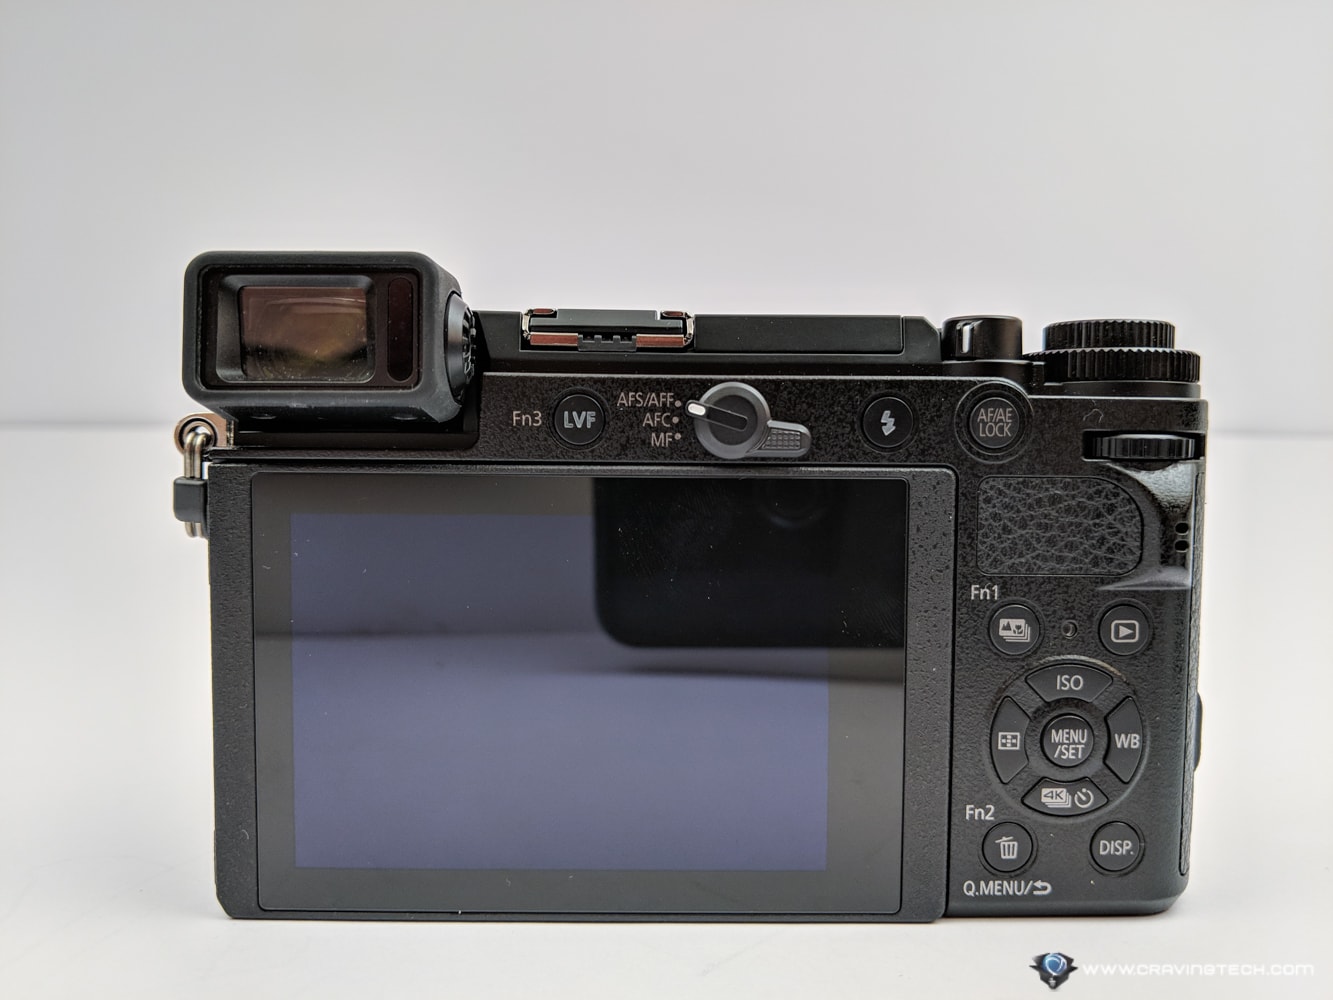 Panasonic Lumix GX9 Review - A Small and Capable Mirrorless Camera